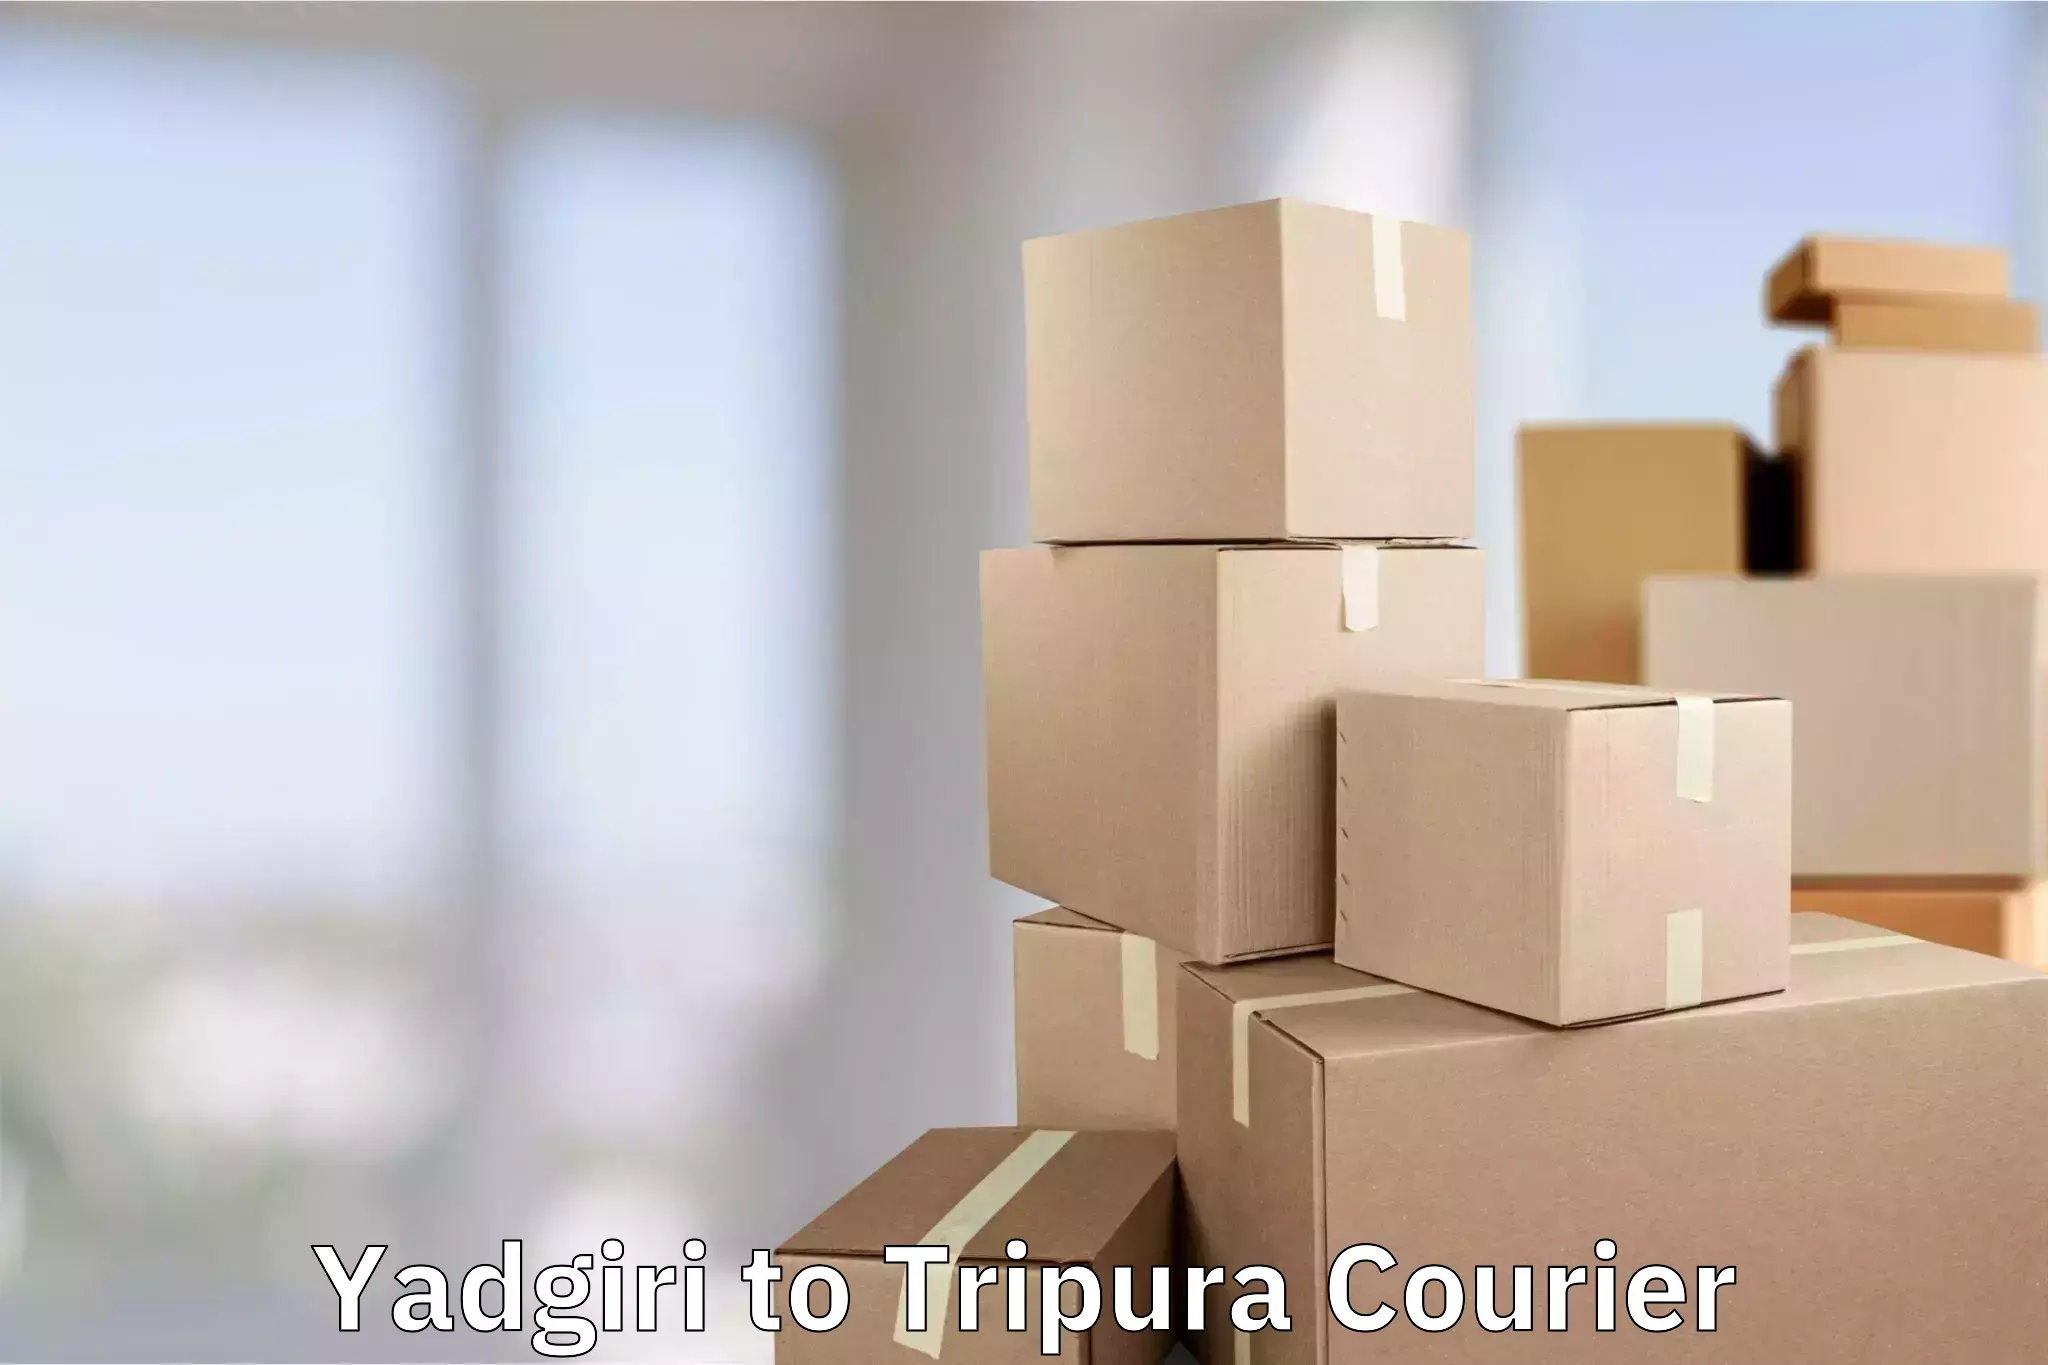 Luggage shipment tracking Yadgiri to Udaipur Tripura